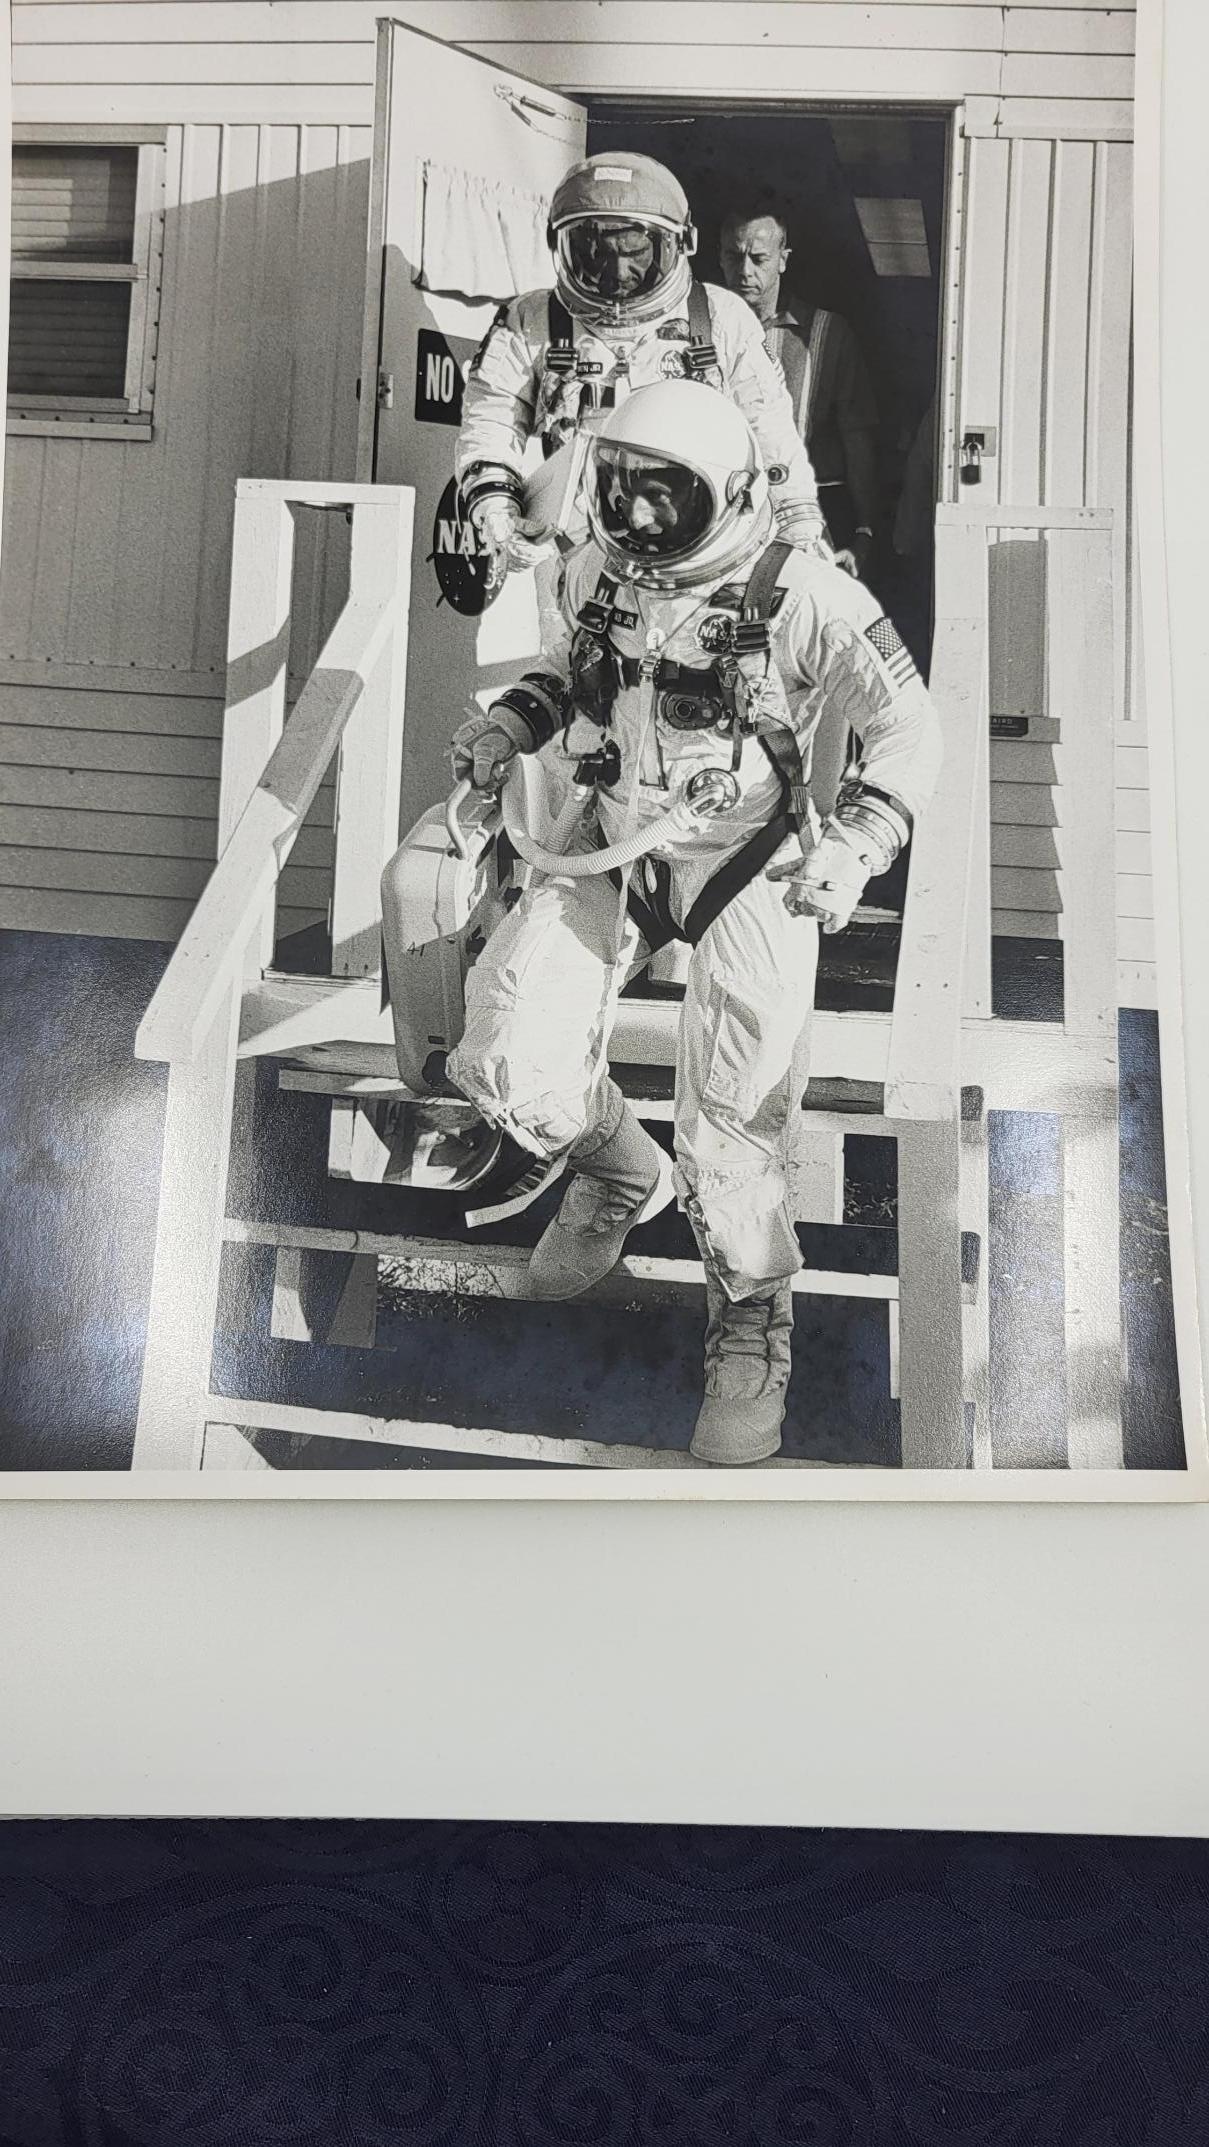 Gemini 11 Photo originale tamponnée au dos World Book Encyclopedia Science Service,inc 516 Travis Street Houston Texas

Gemini 11 (officiellement Gemini XI) est la 9e mission habitée du programme Gemini et la 15e mission spatiale habitée américaine.